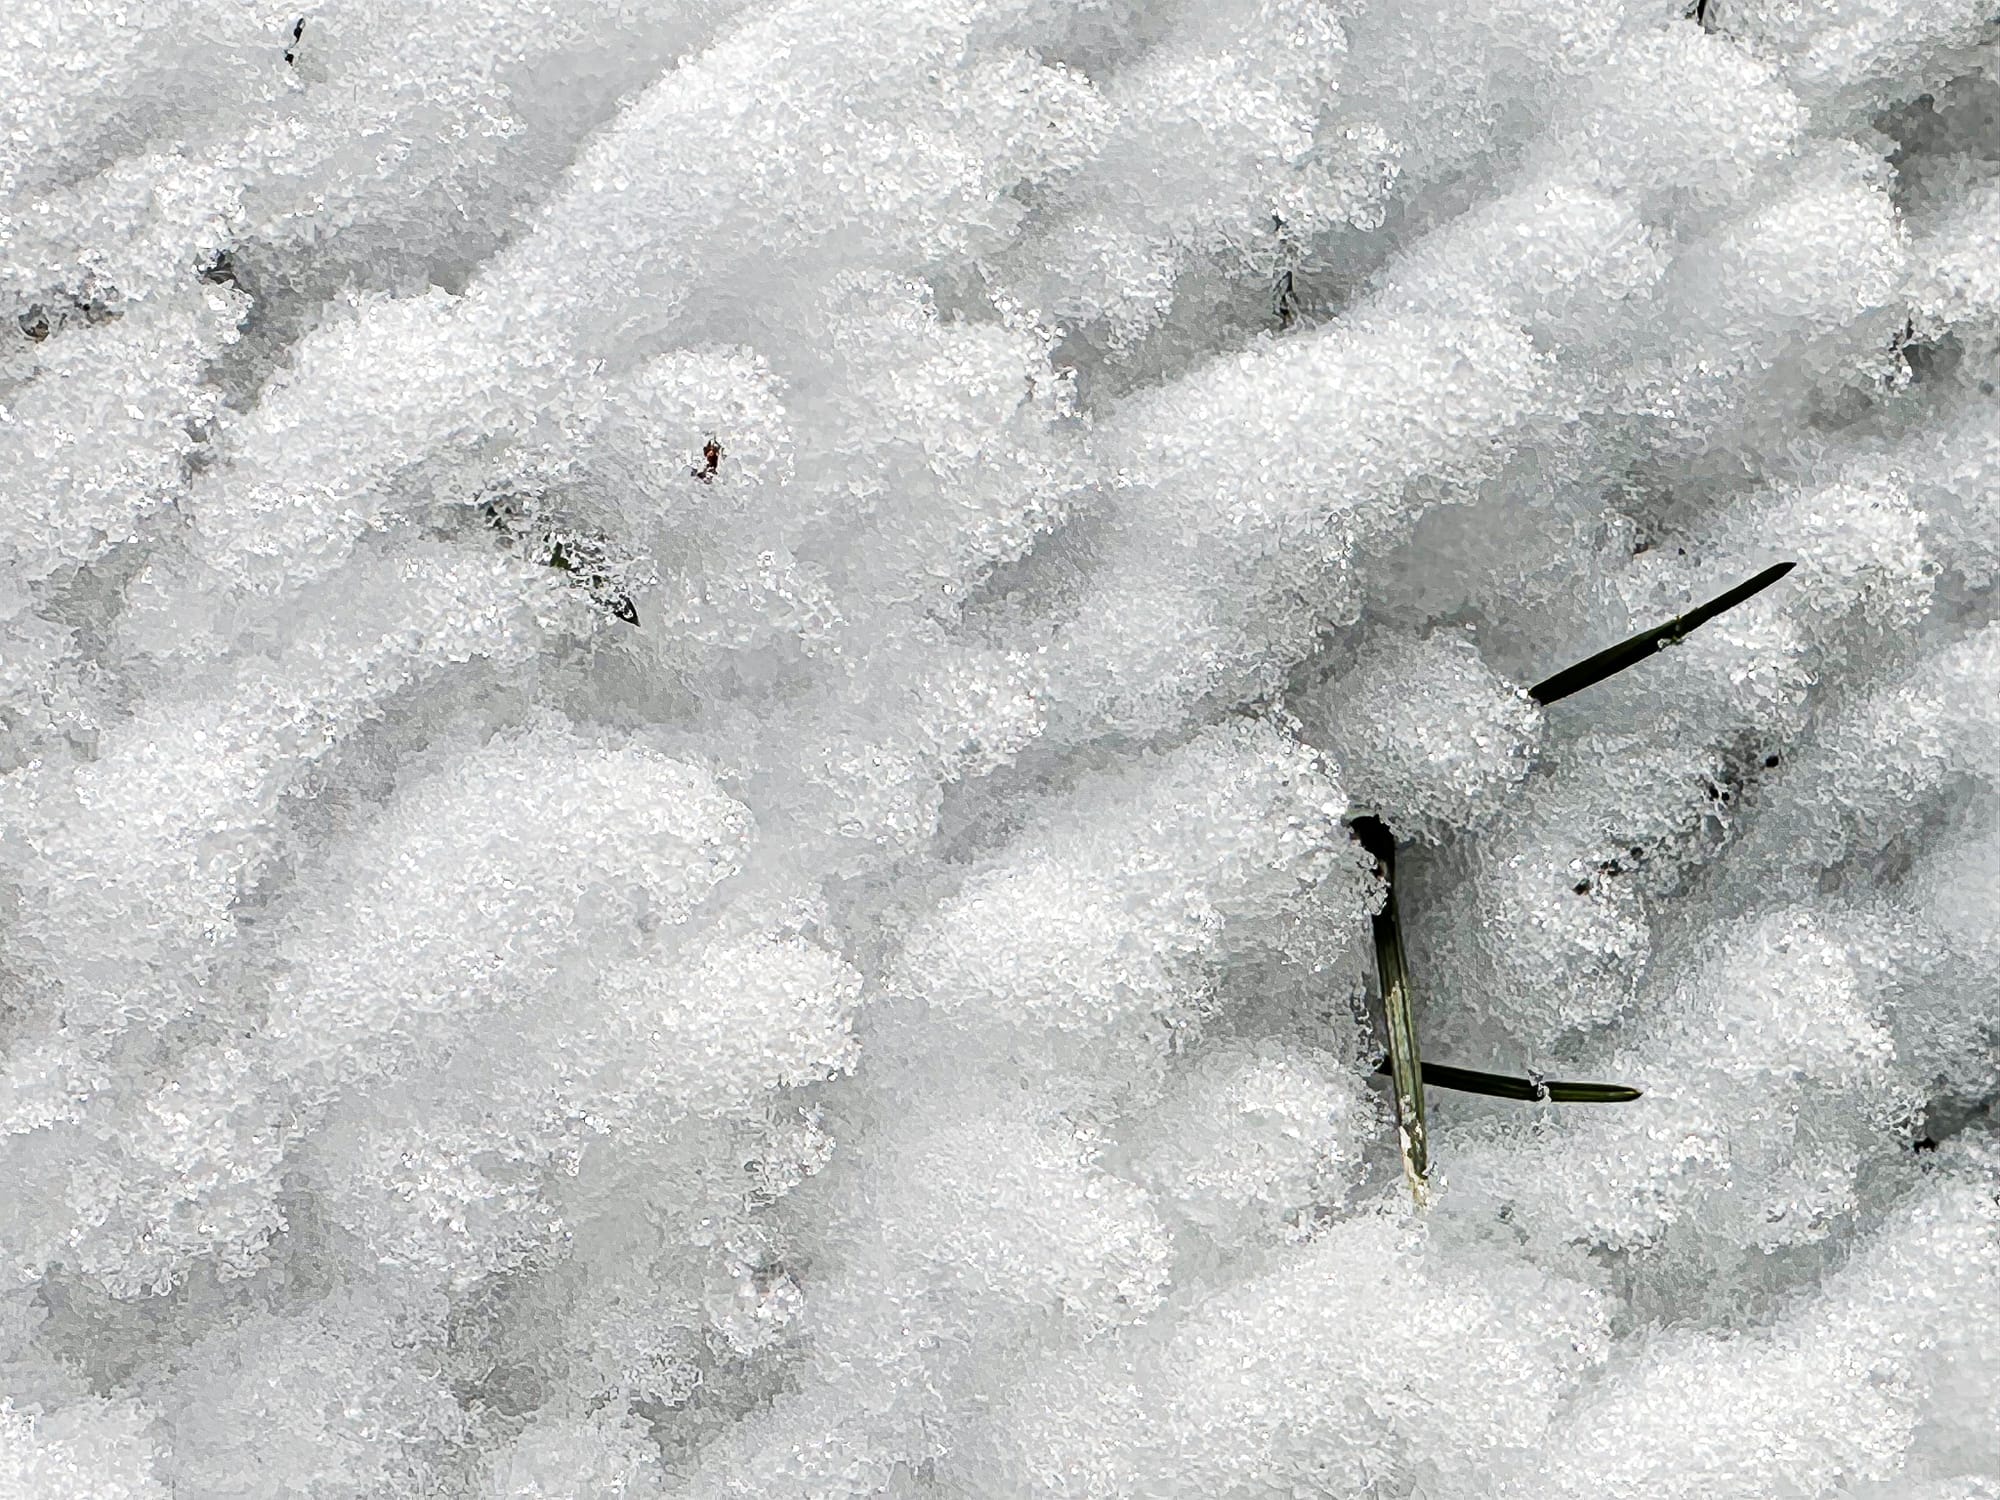 snowflakes on ground